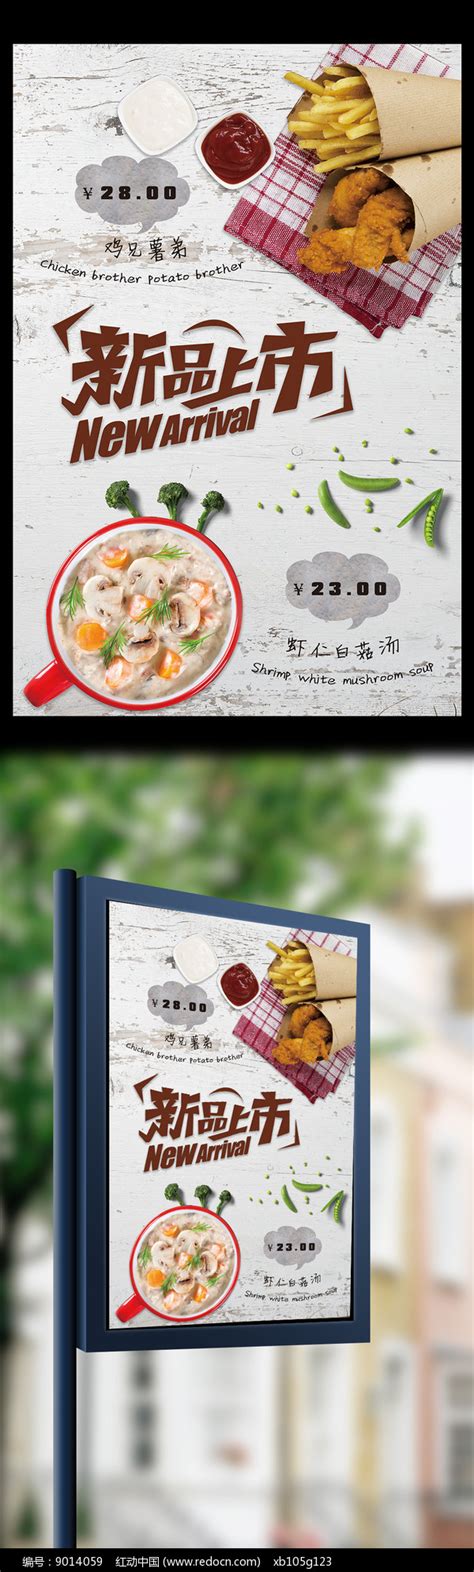 新品上市便利餐厅中国